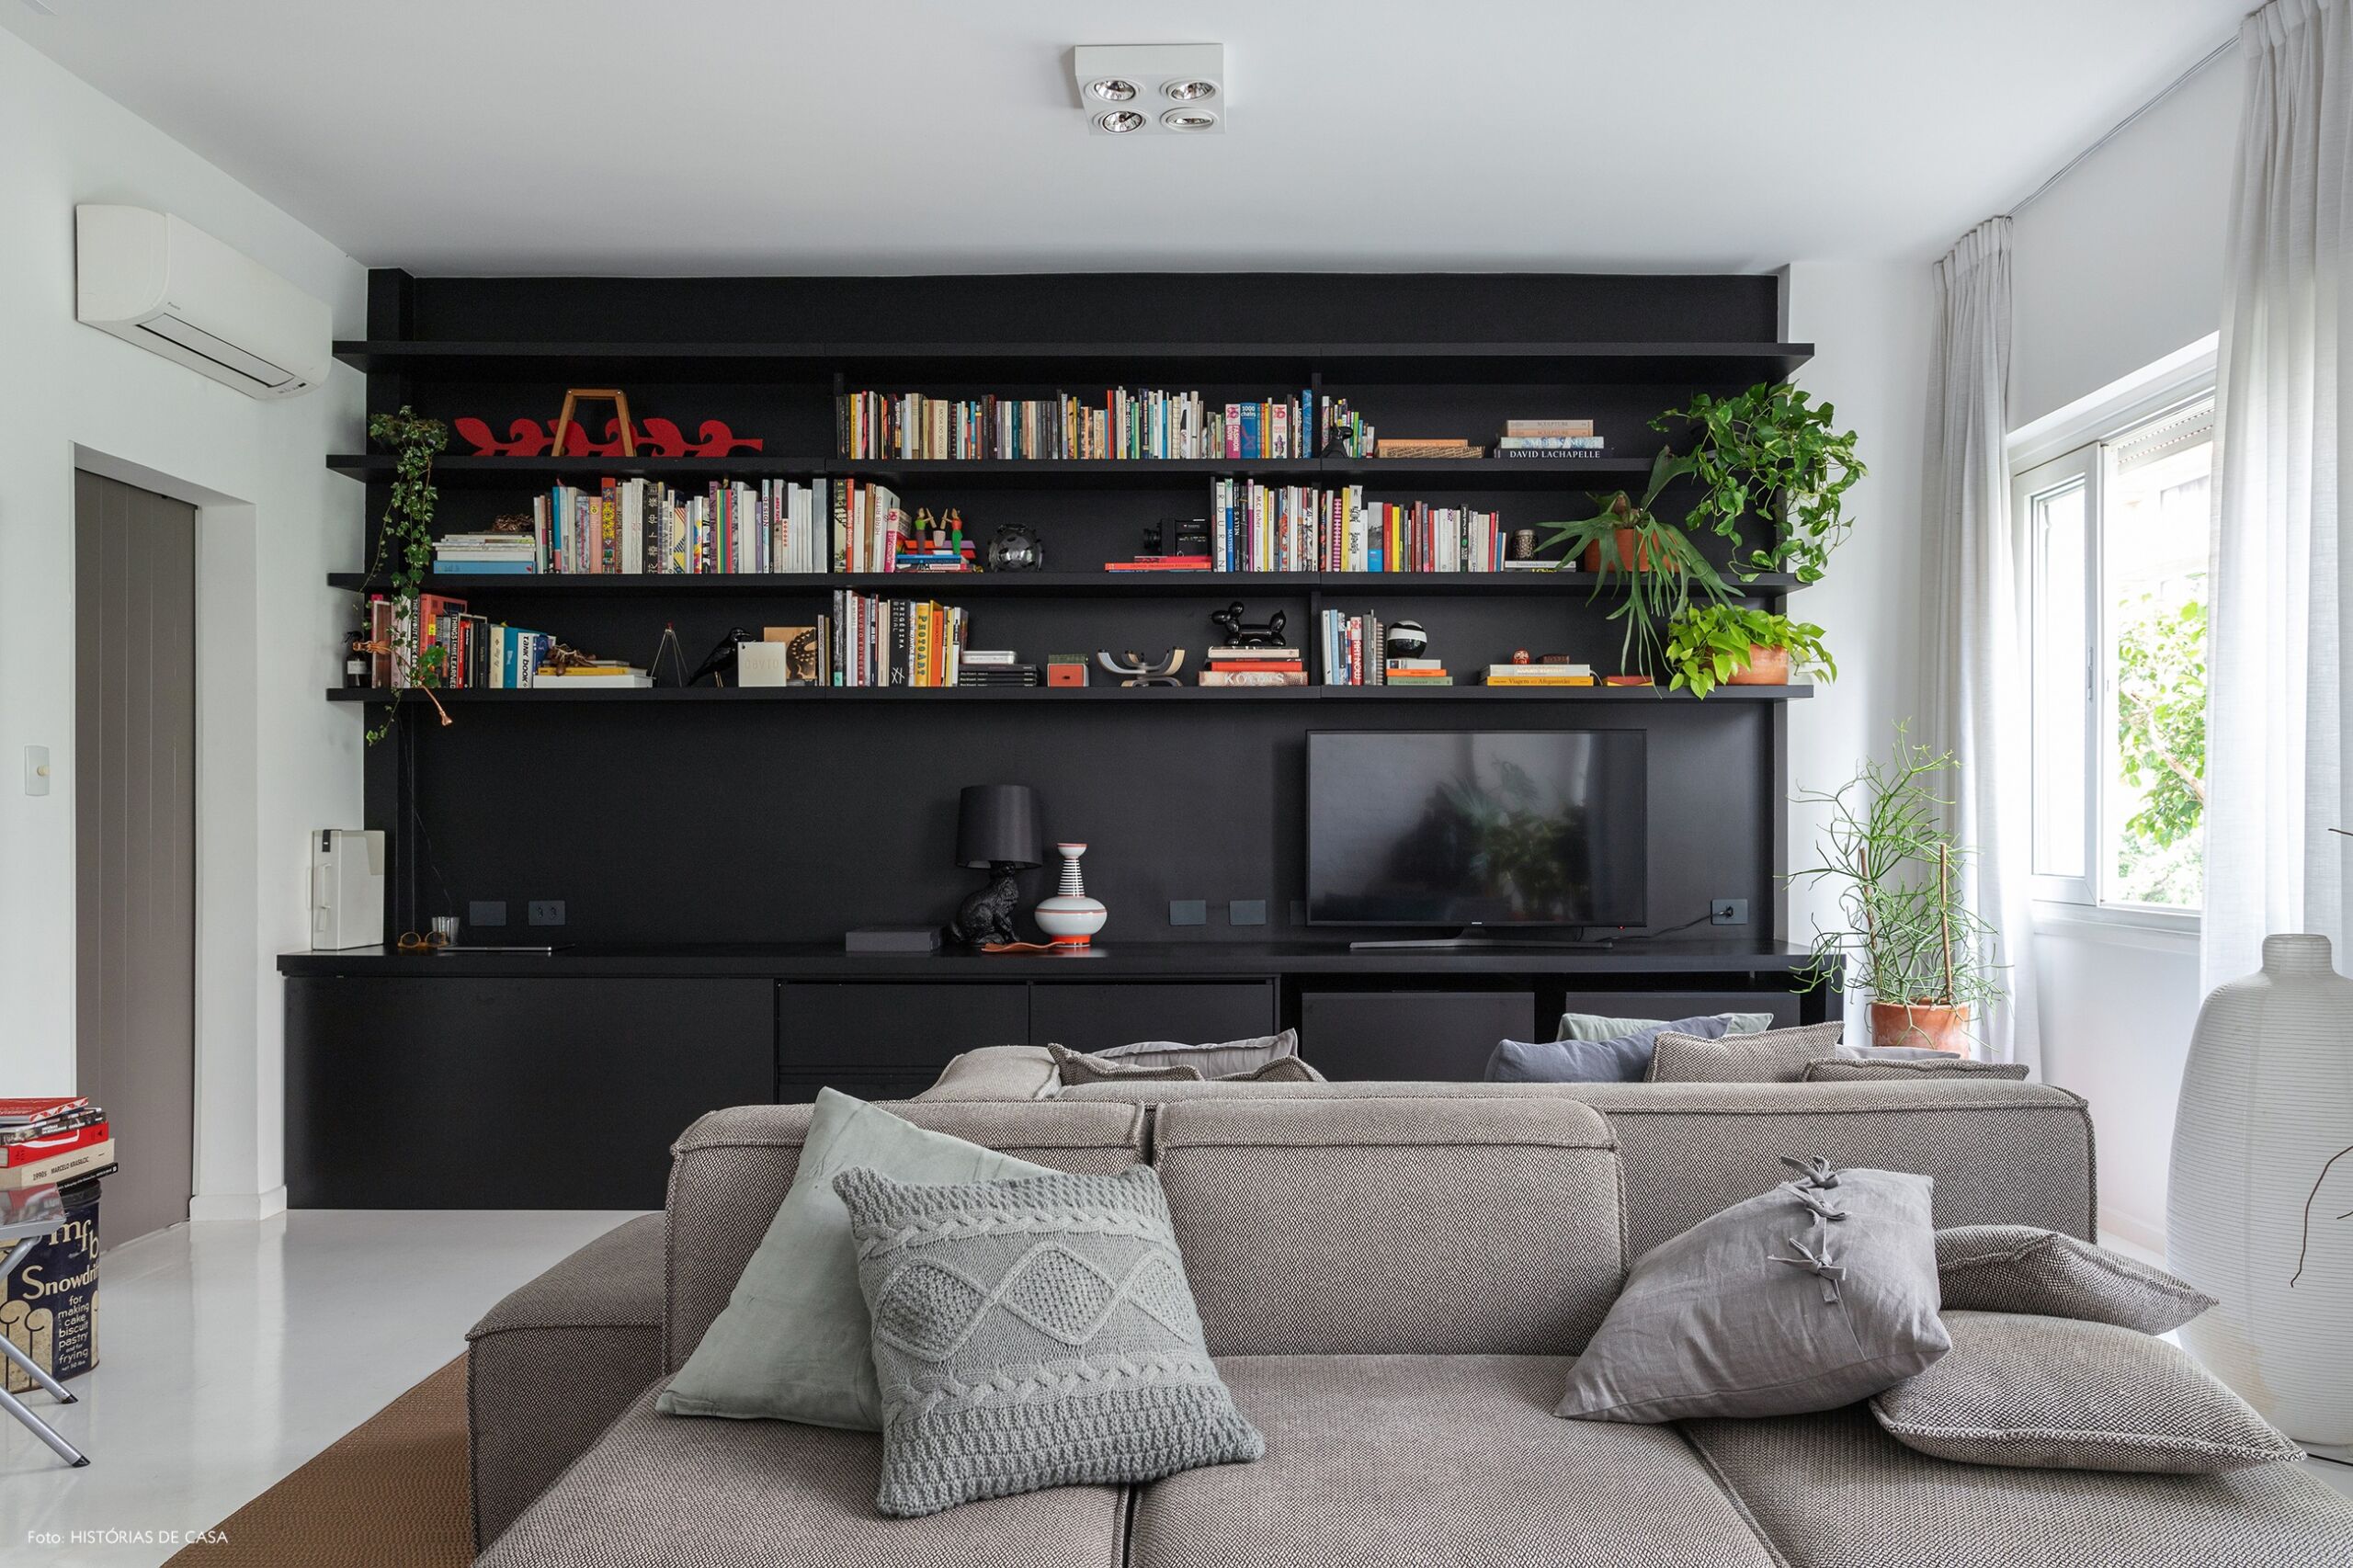 Apartamento escandinavo, sala com estante preta e sofá cinza